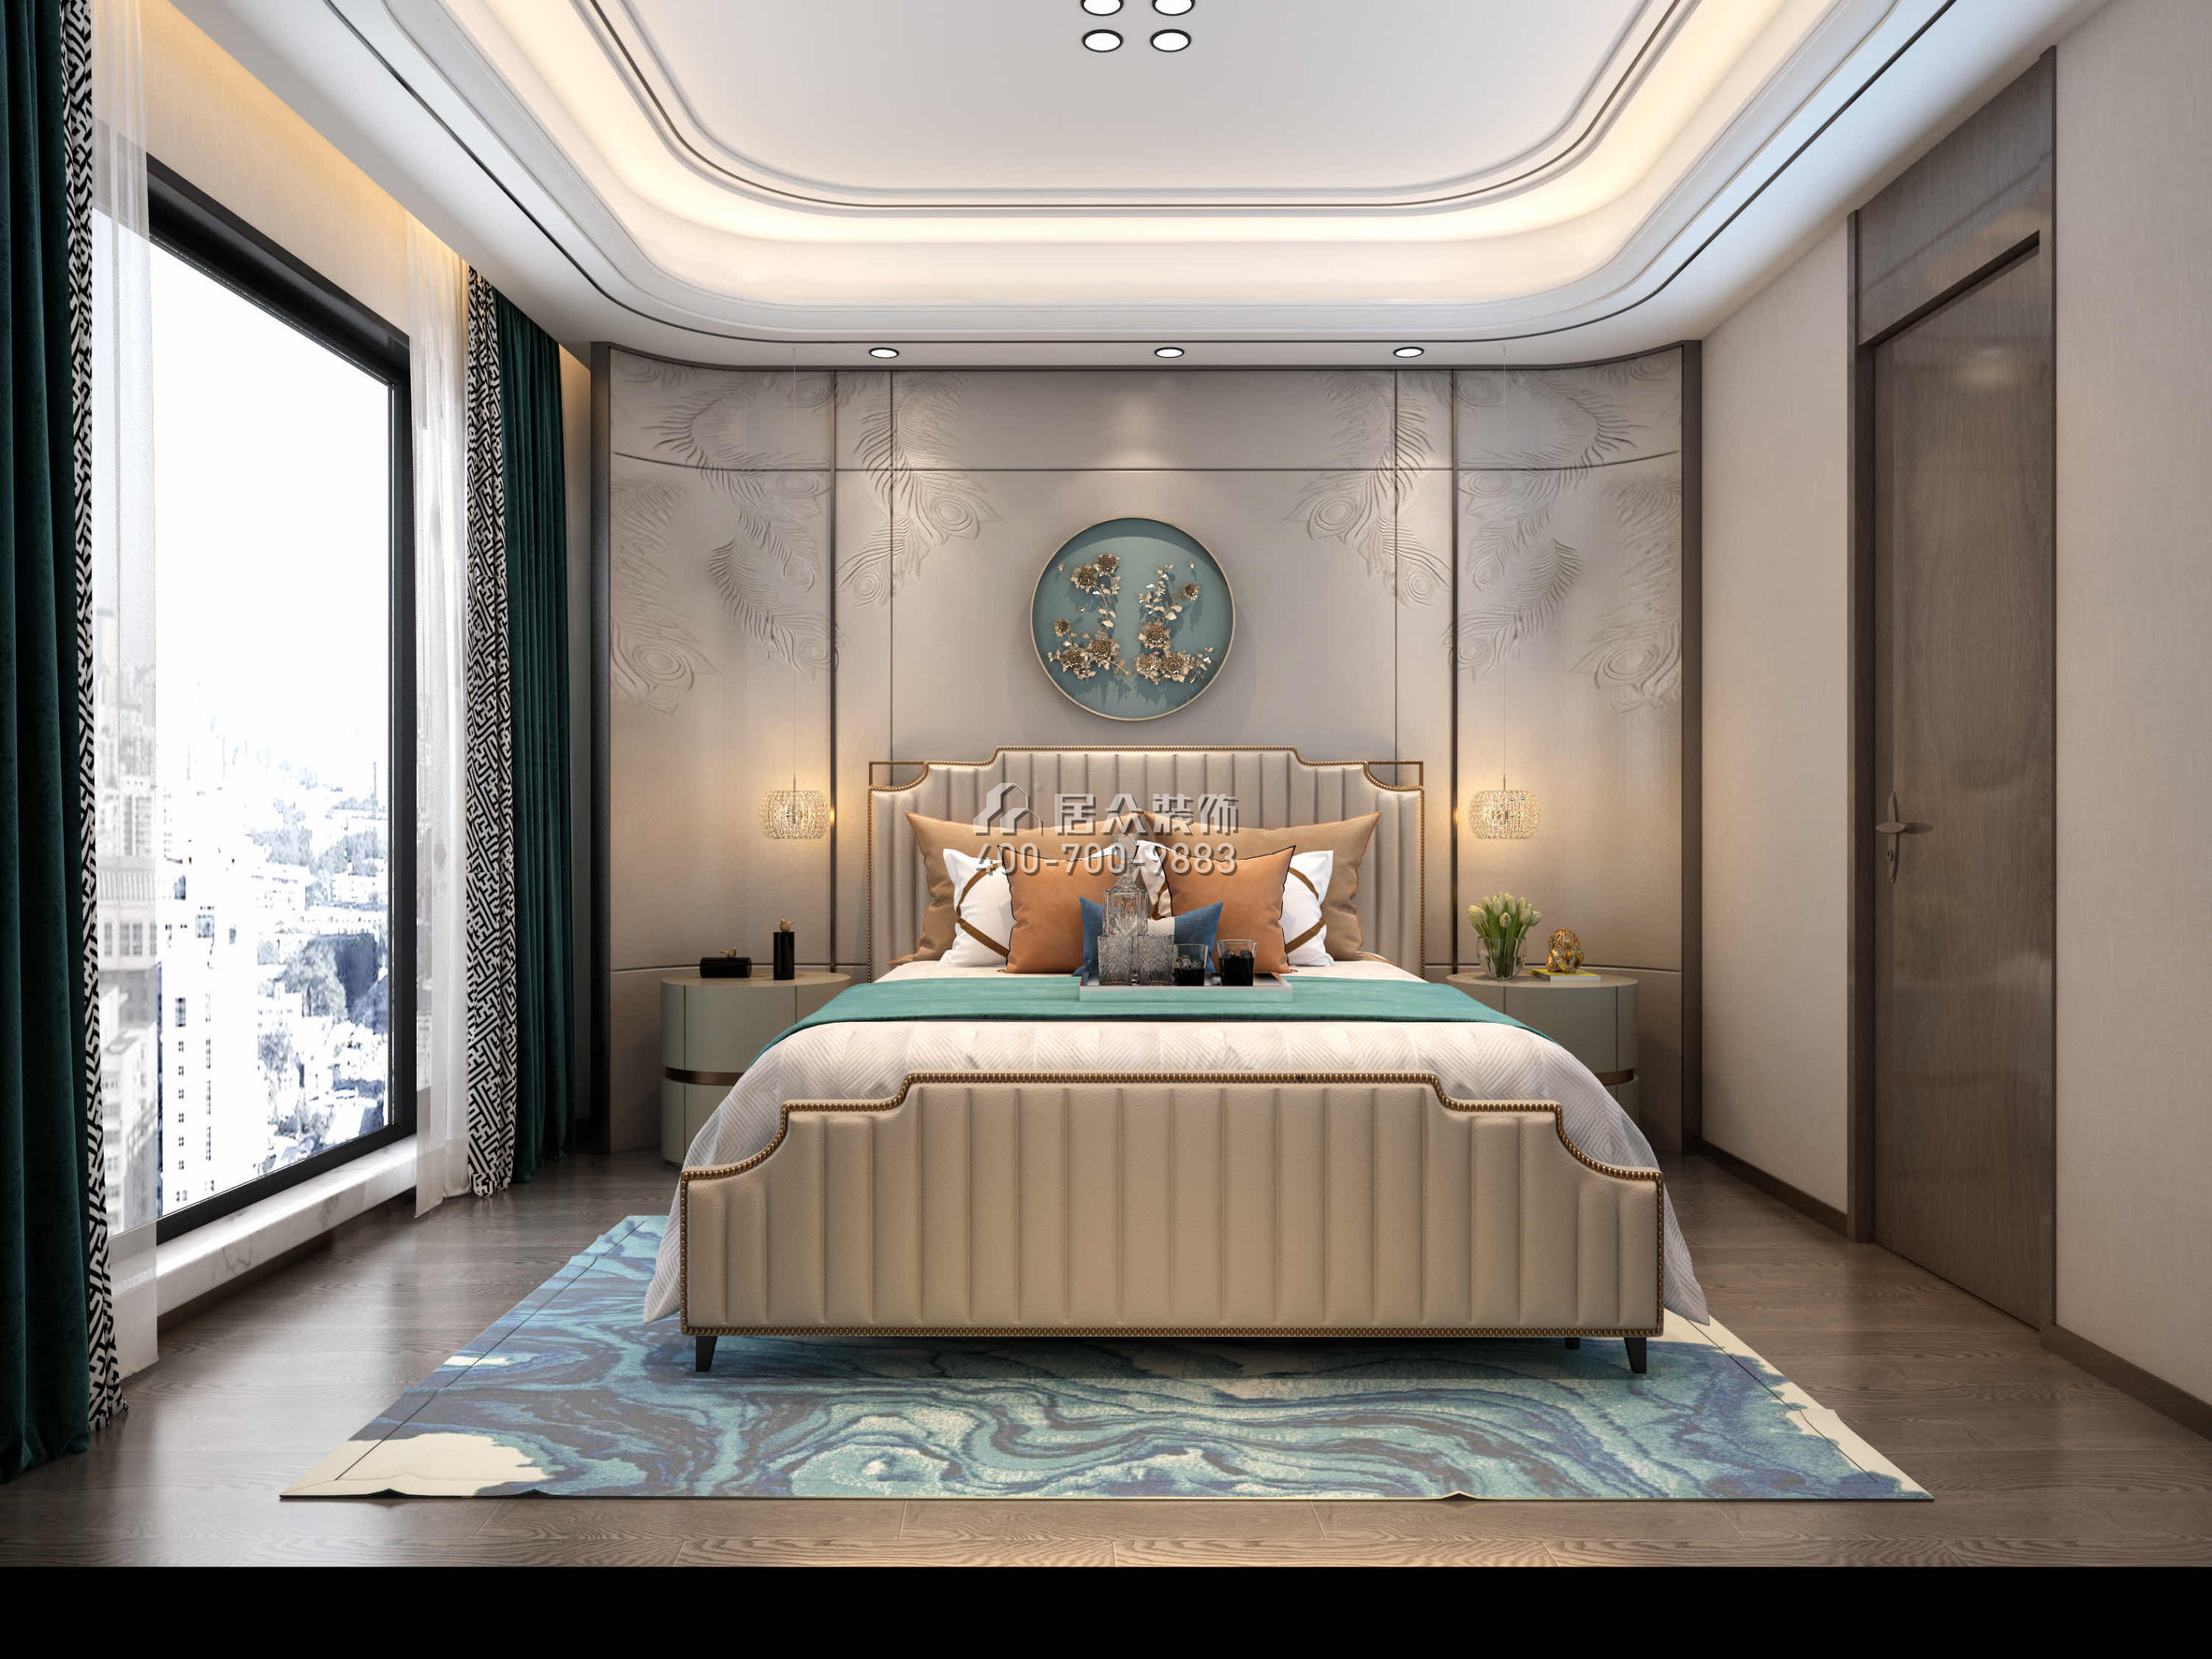 新天鵝堡289平方米現代簡約風格平層戶型臥室裝修效果圖